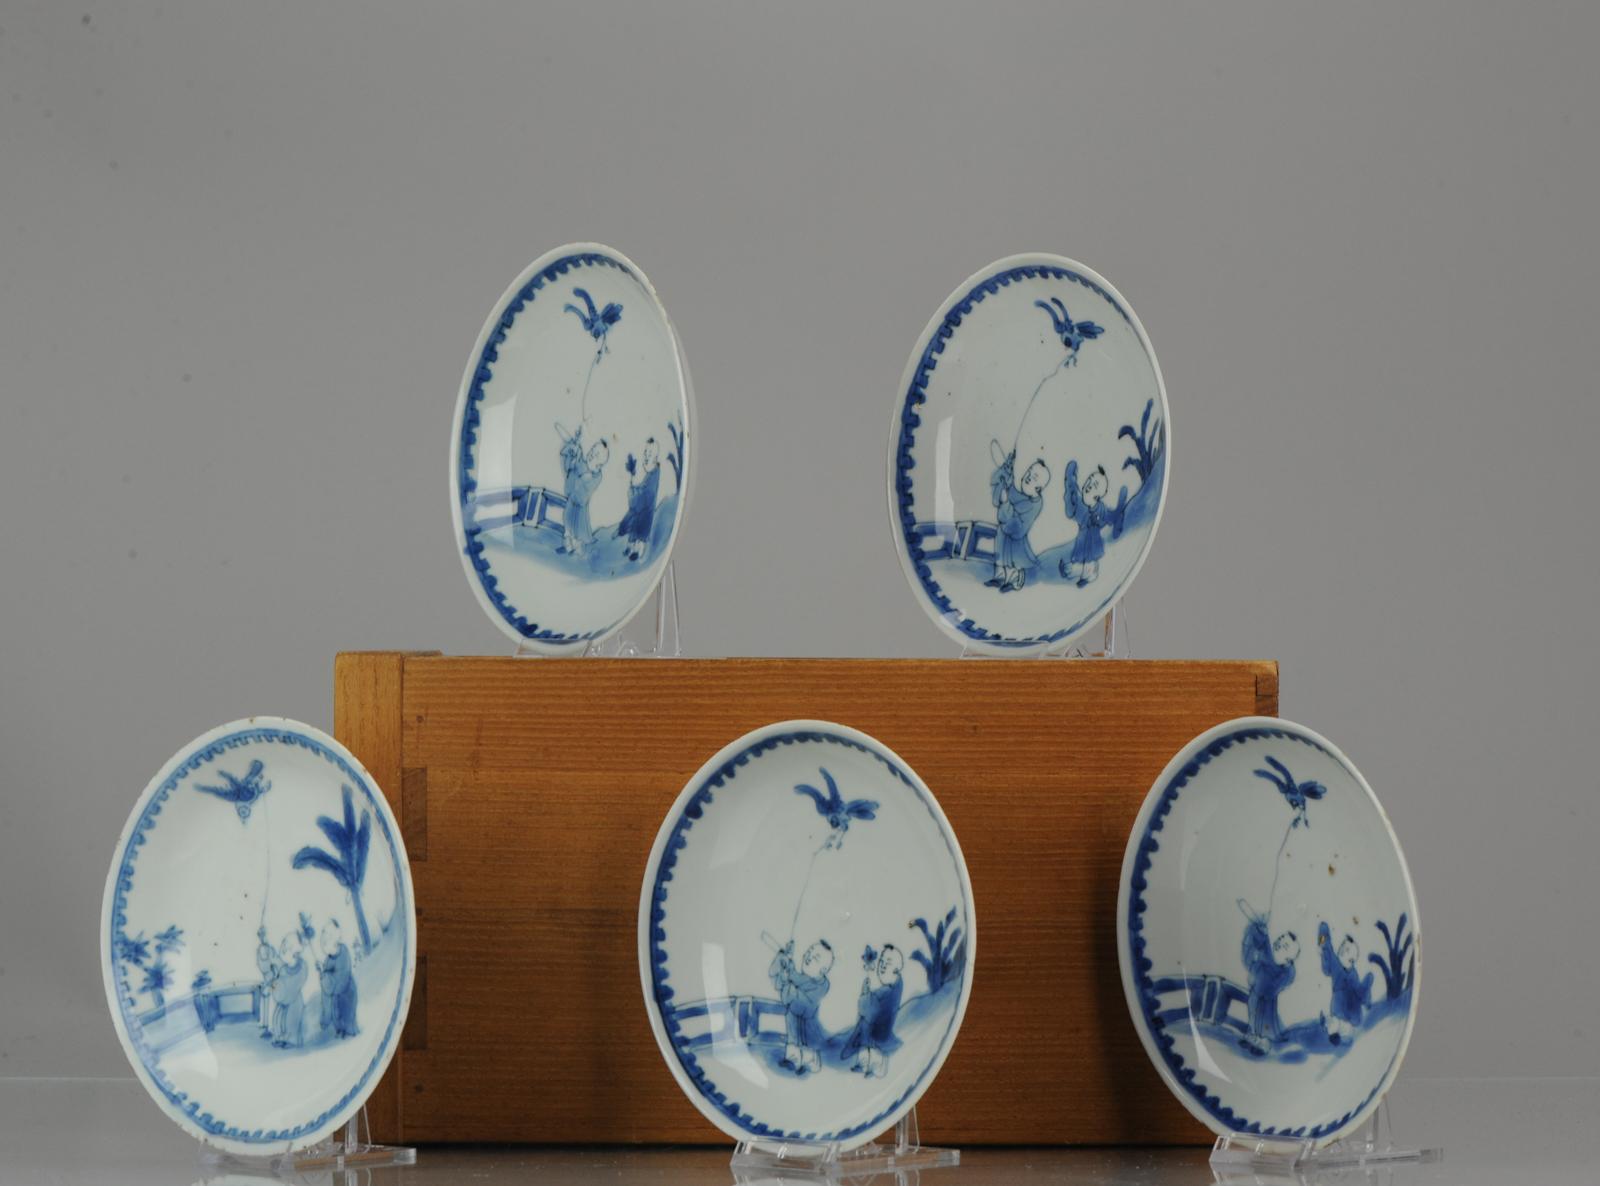 Ensemble de 5 plats en porcelaine bleu et blanc de la fin de la période Ming, période Tianqi ou Chongzhen, vers 1620-1635, très joliment décorés. Boîte incluse

Ces petits plats en forme de soucoupe en porcelaine de transition auraient été